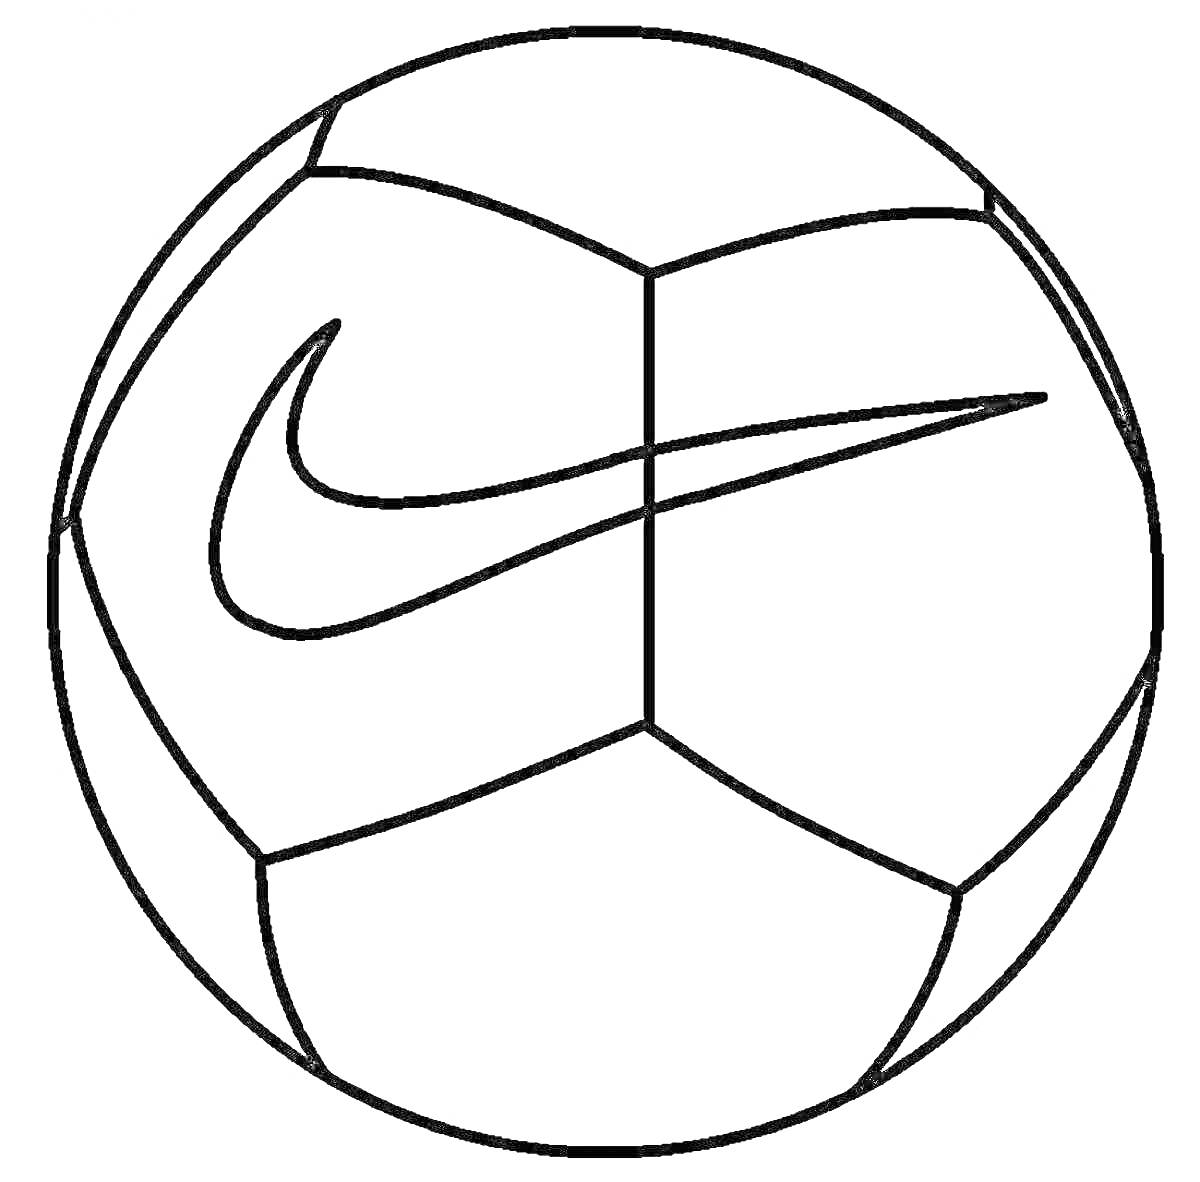 Раскраска футбольный мяч с логотипом